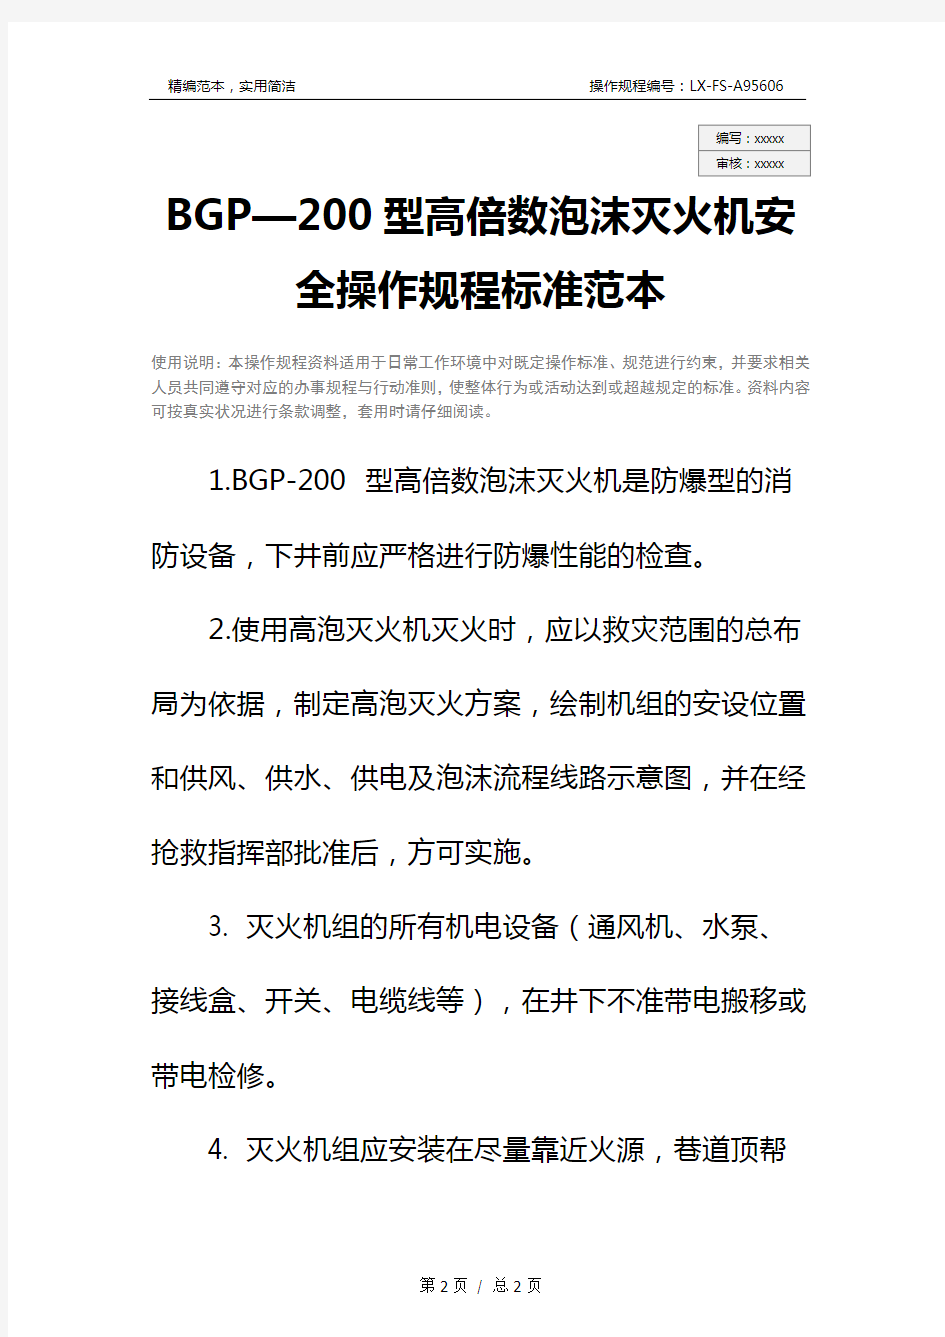 BGP—200型高倍数泡沫灭火机安全操作规程标准范本_1